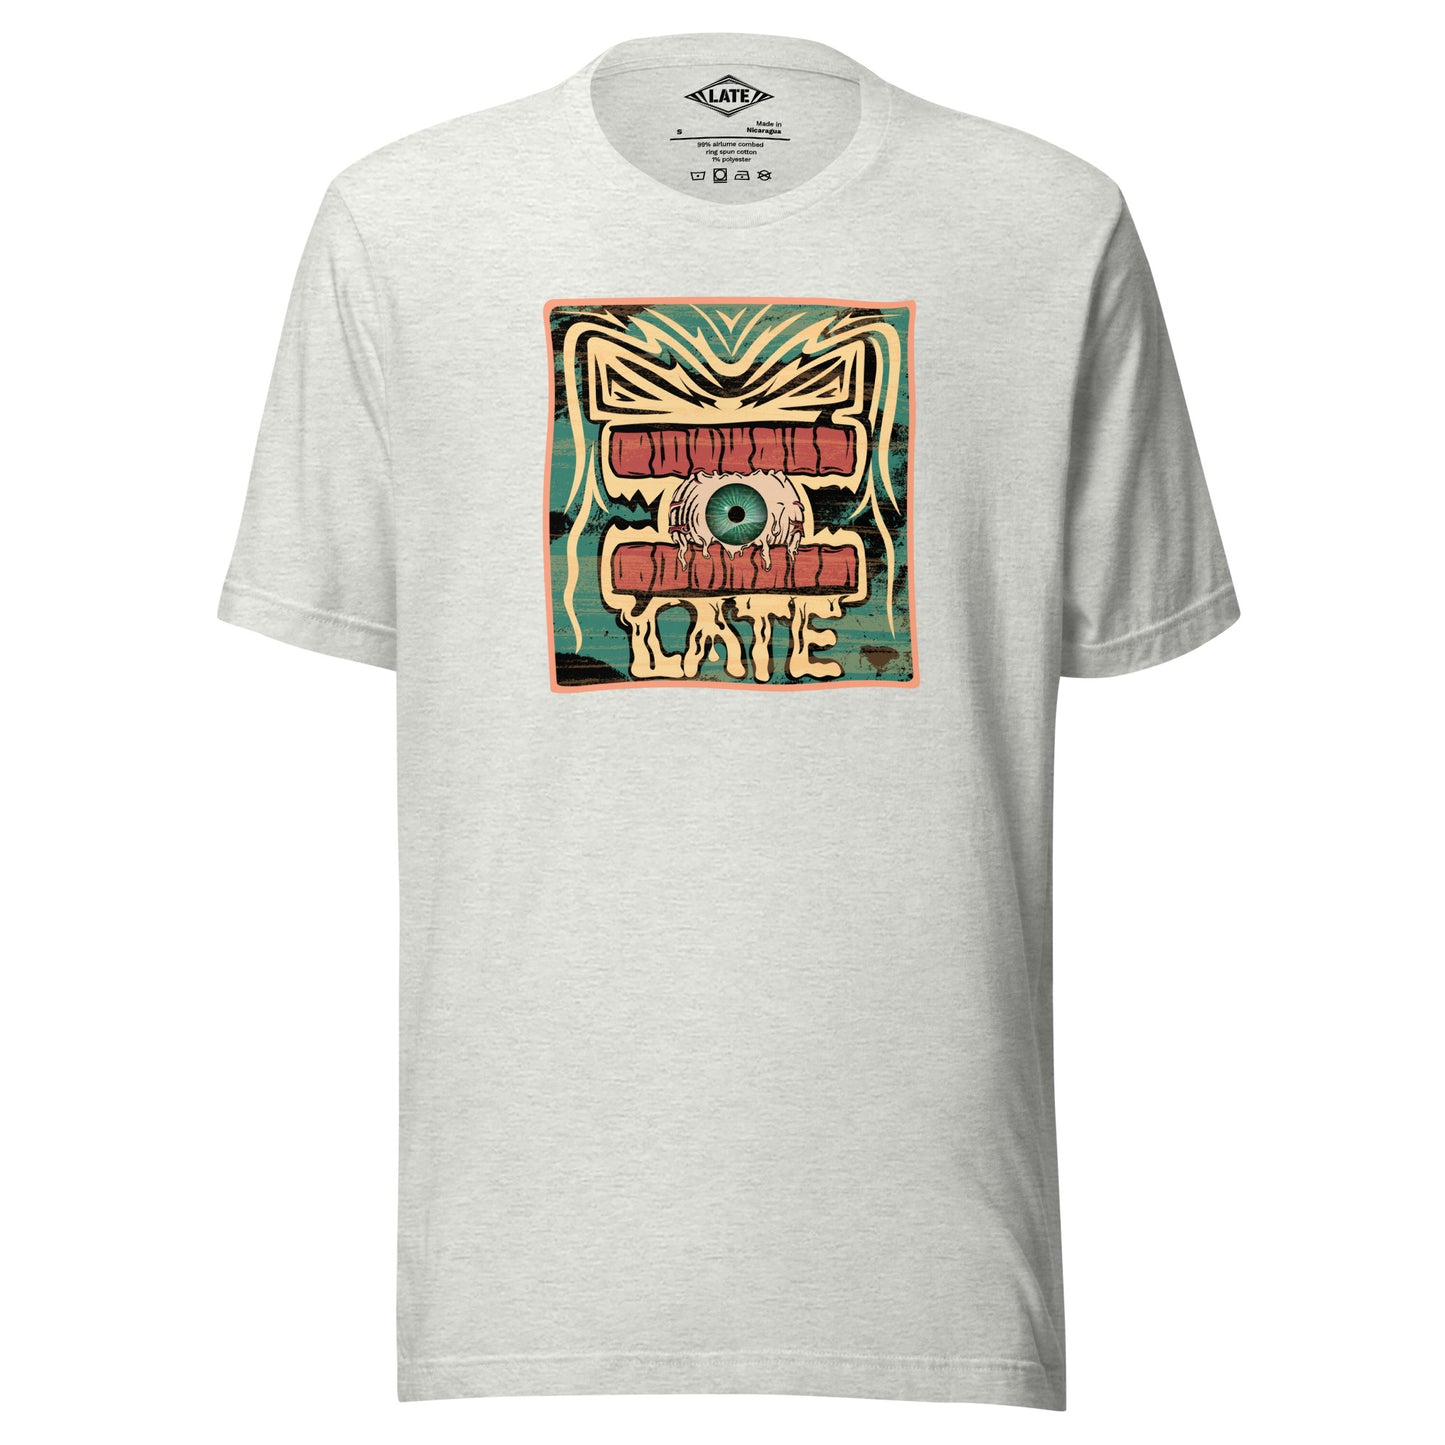 T-shirt rétro skateboarding, design couleur délavée, années 70,80, original dent et oeil skate, tee-shirt unisexe gris